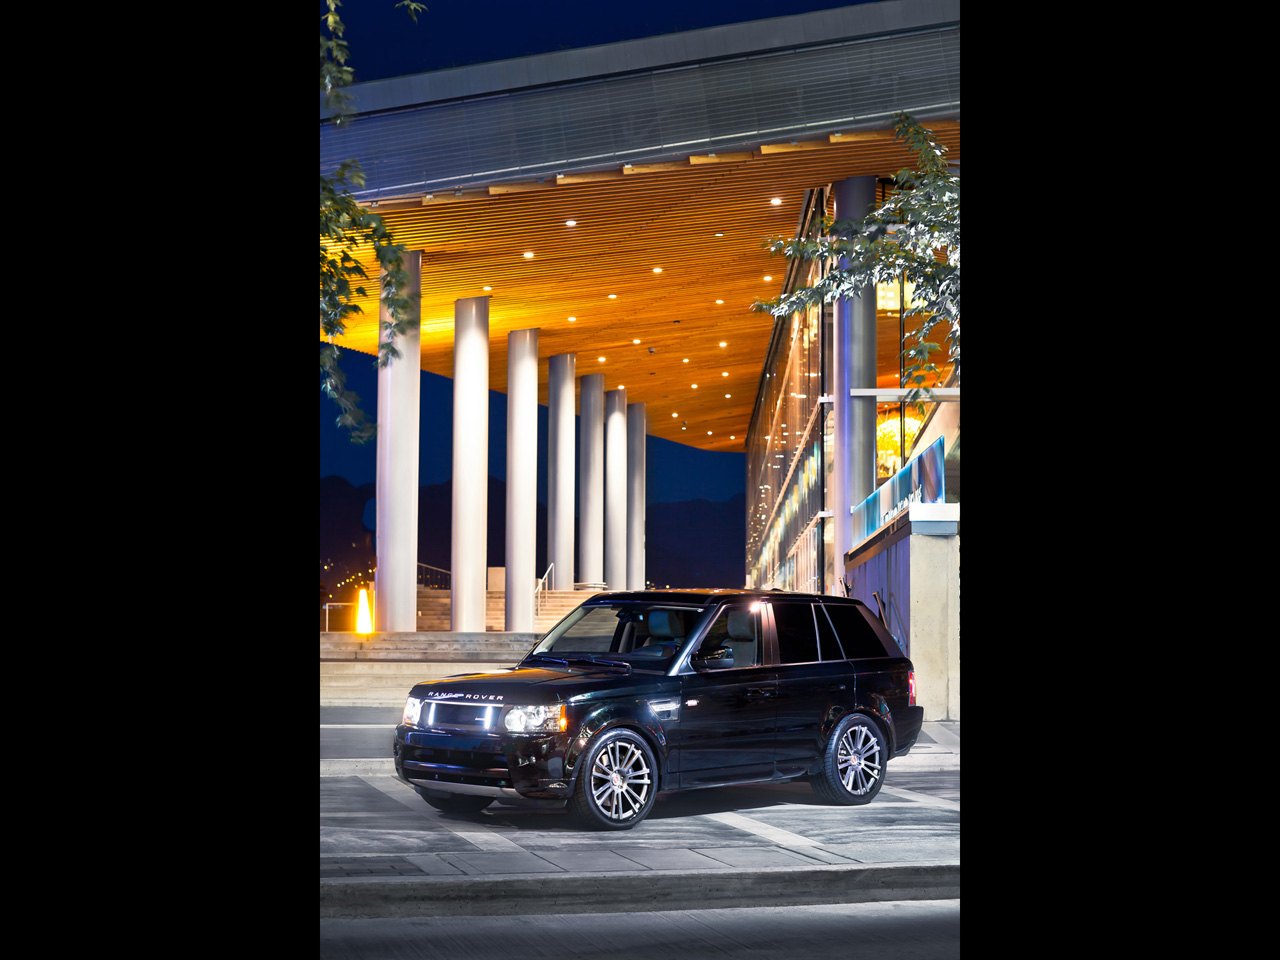 2012 Stromen Range Rover RRS Edition Carbon